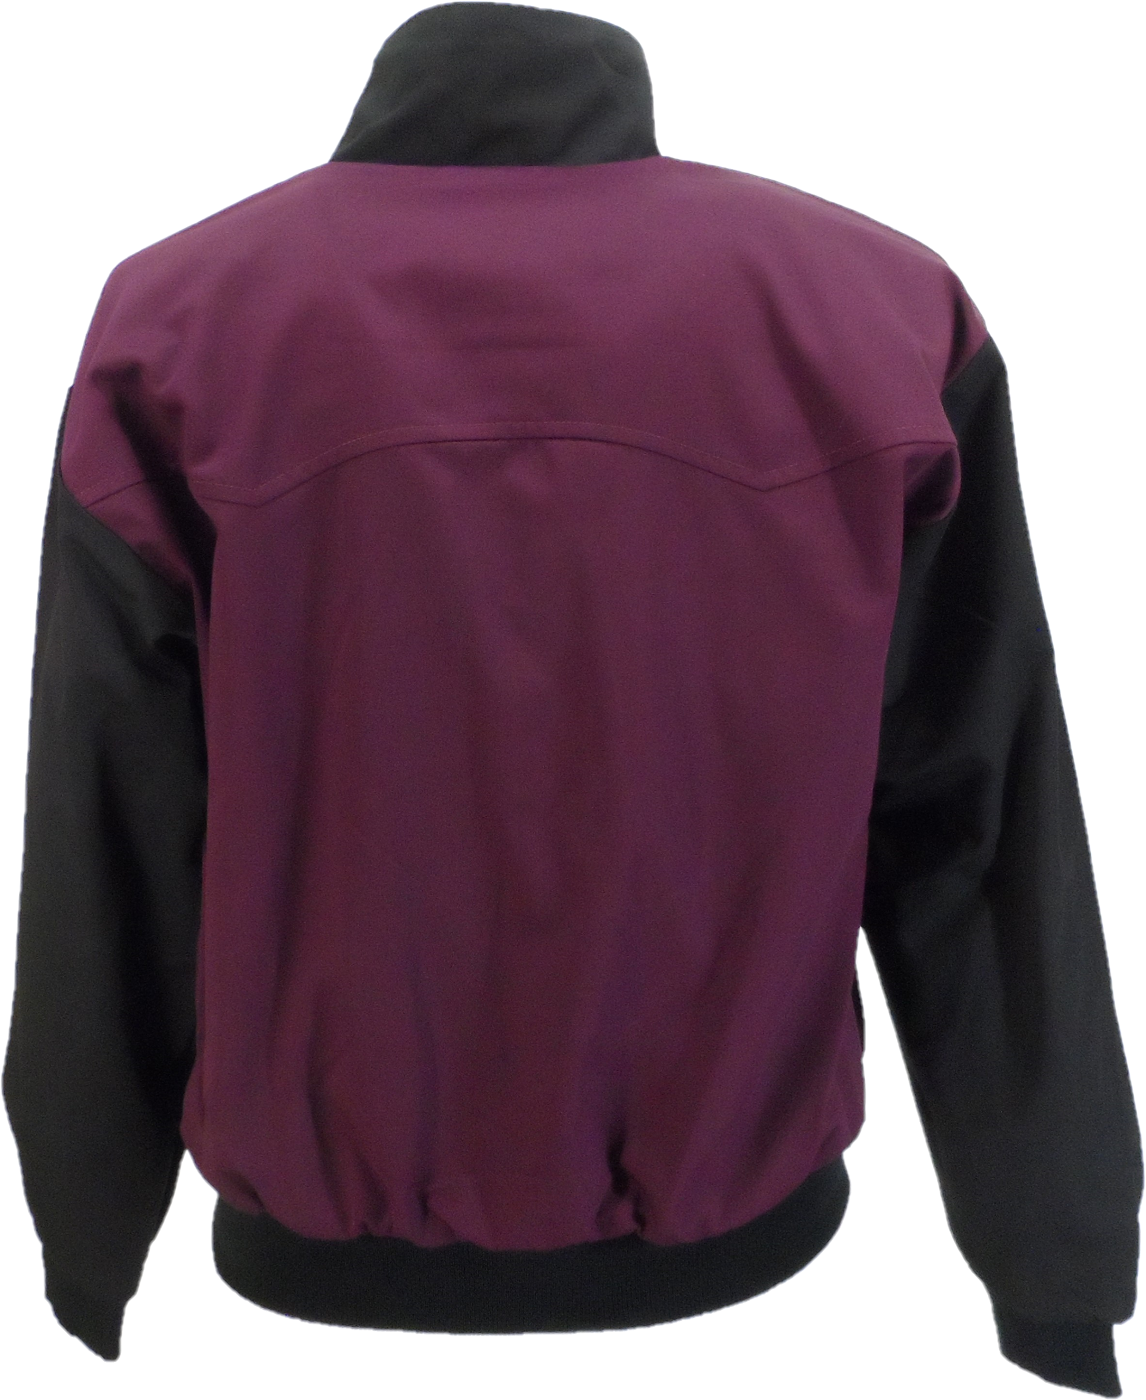 Relco chaquetas harrington retro rockabilly de los años 60 y 70 en color burdeos y negro para hombre